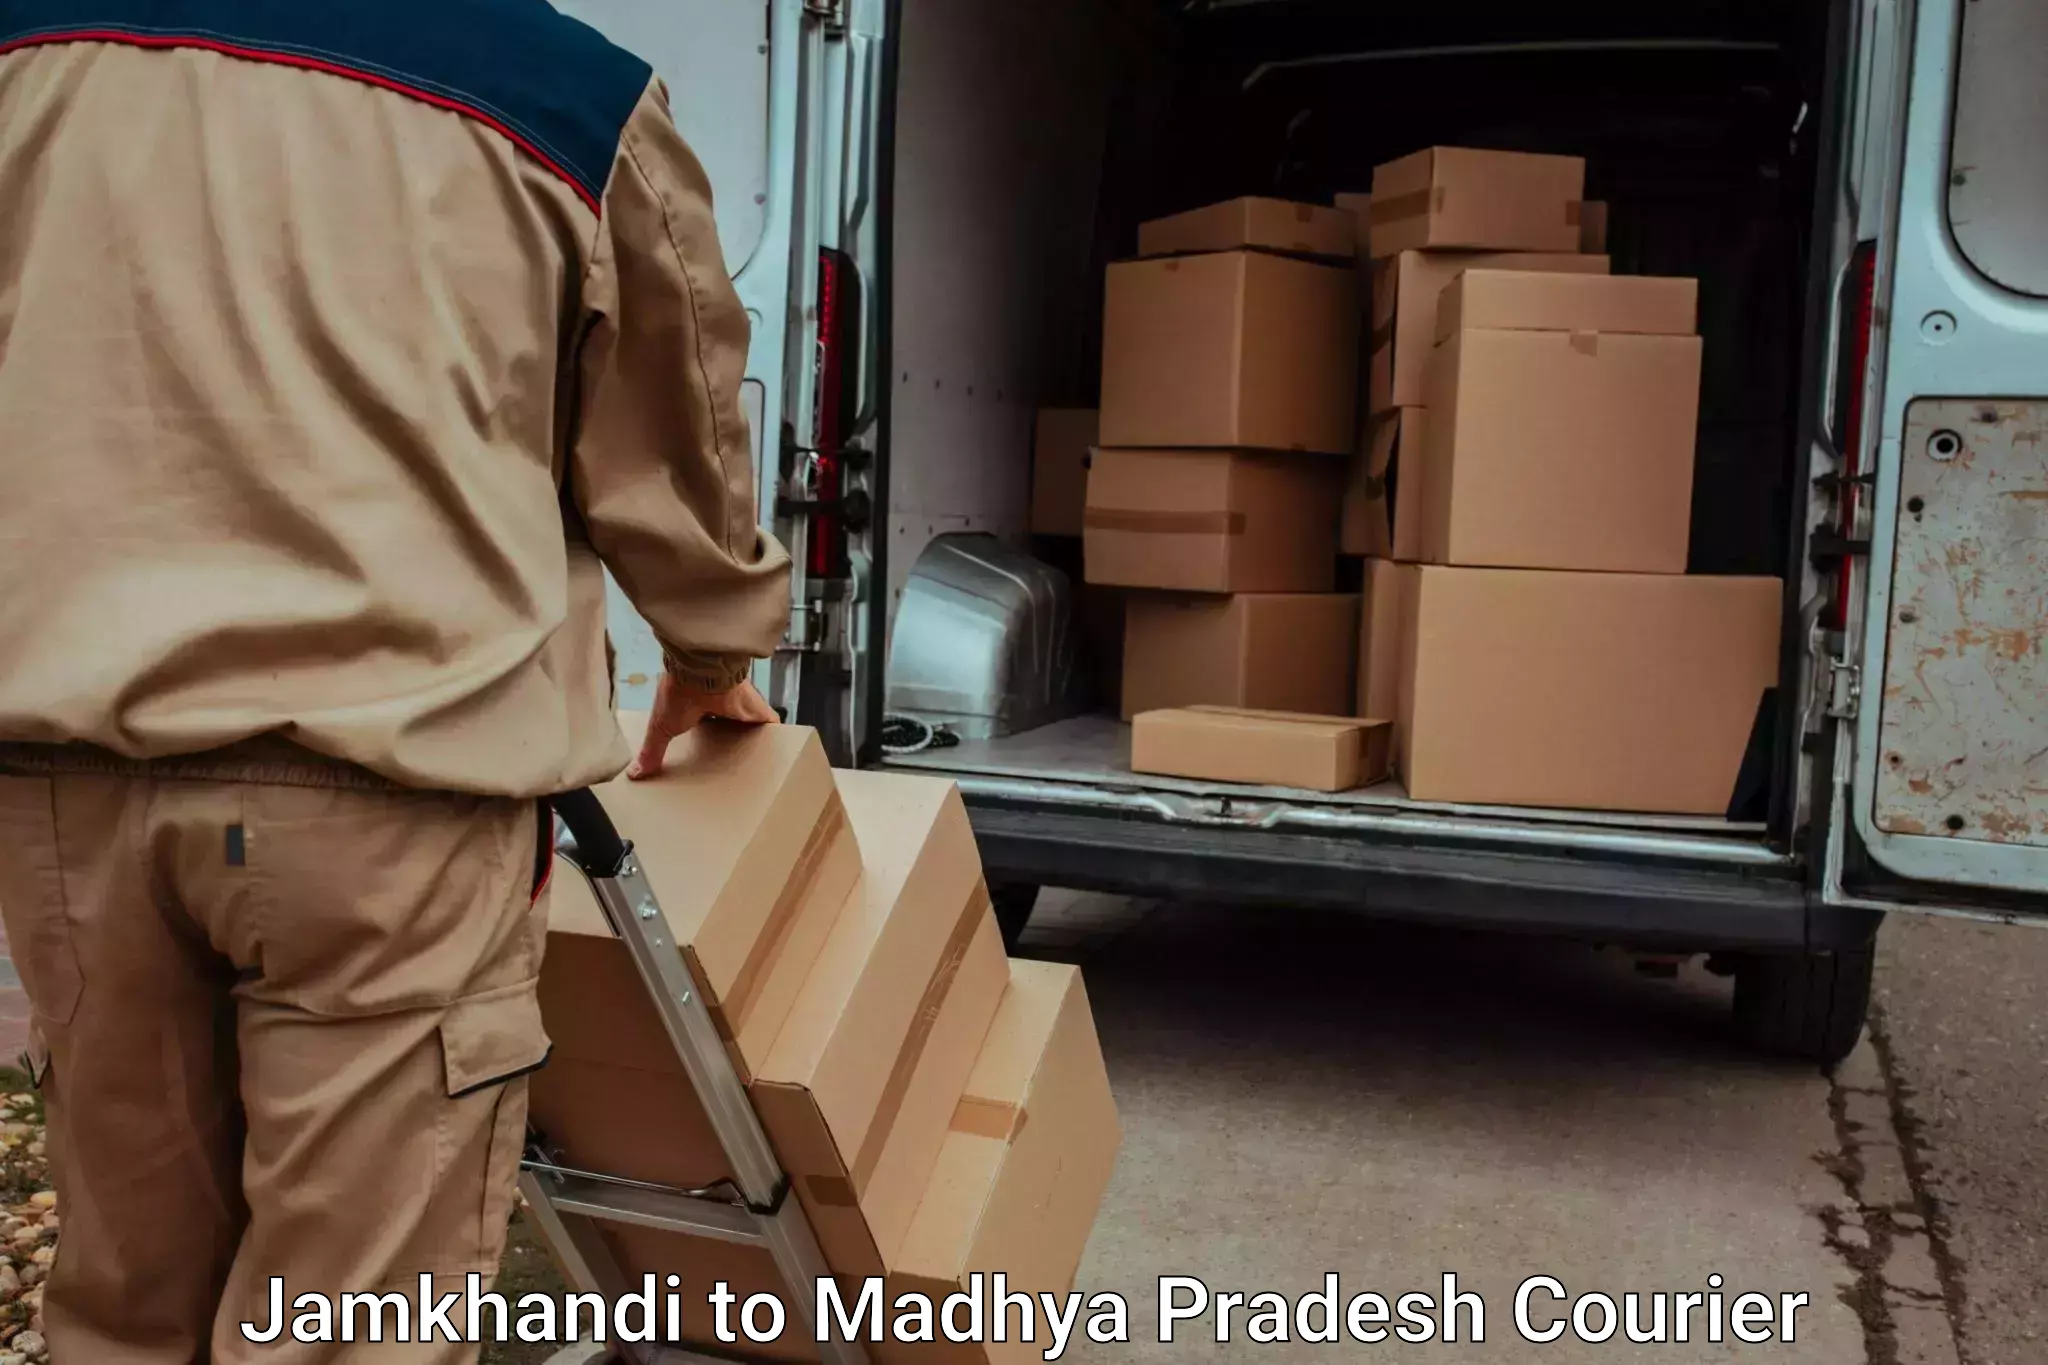 Luggage transport service Jamkhandi to Sohagi